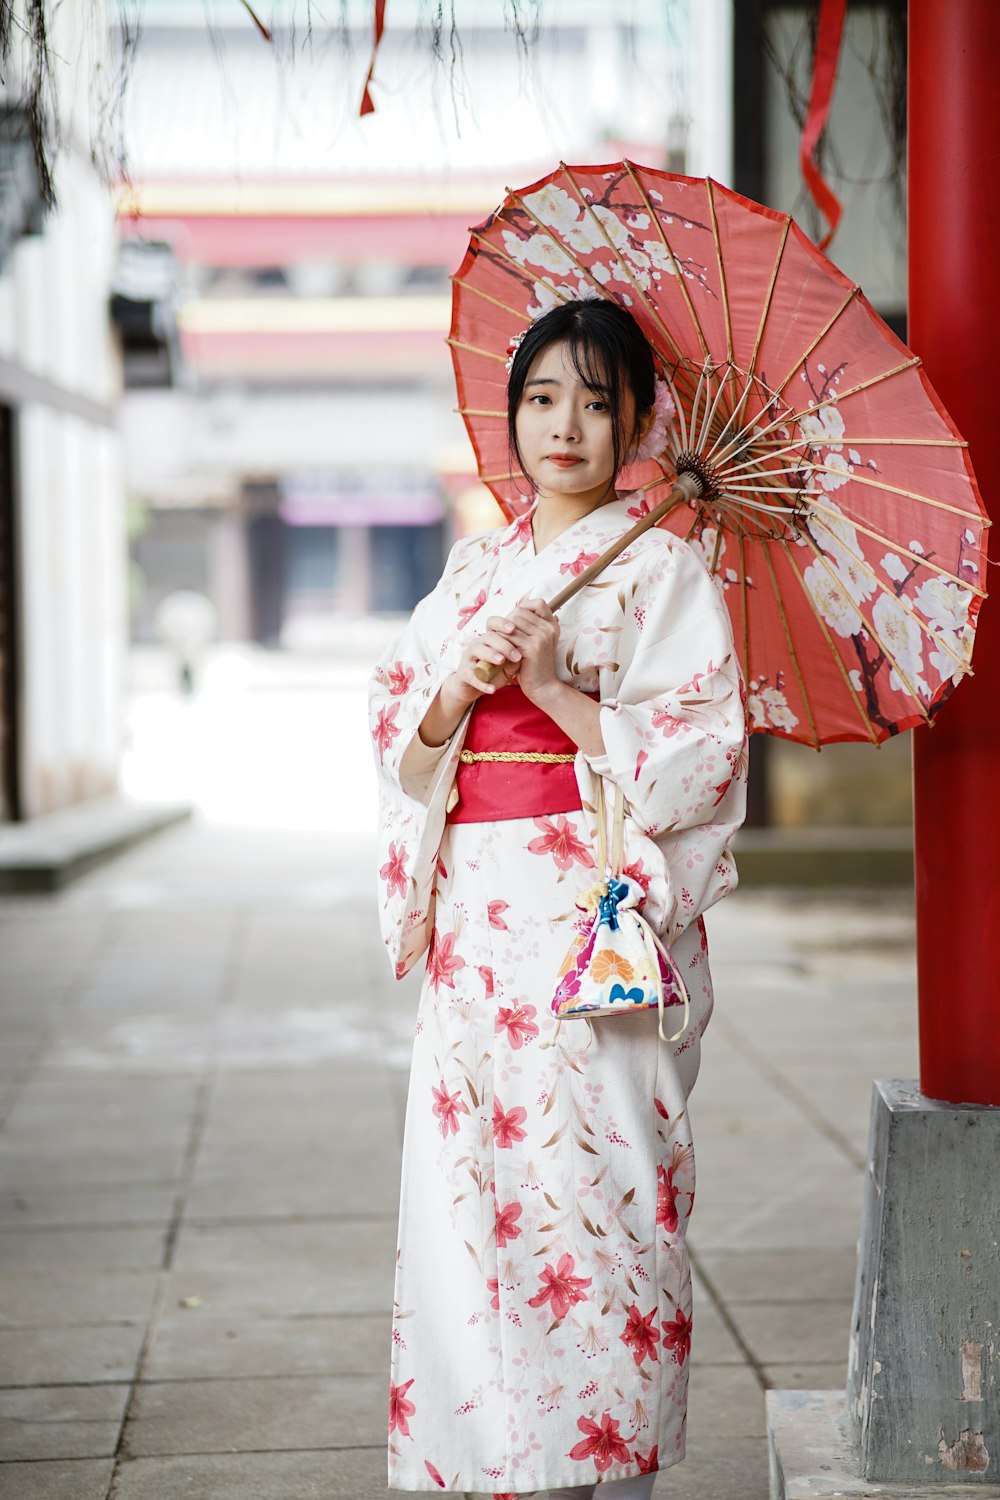 donna in kimono bianco e rosso che tiene l'ombrello